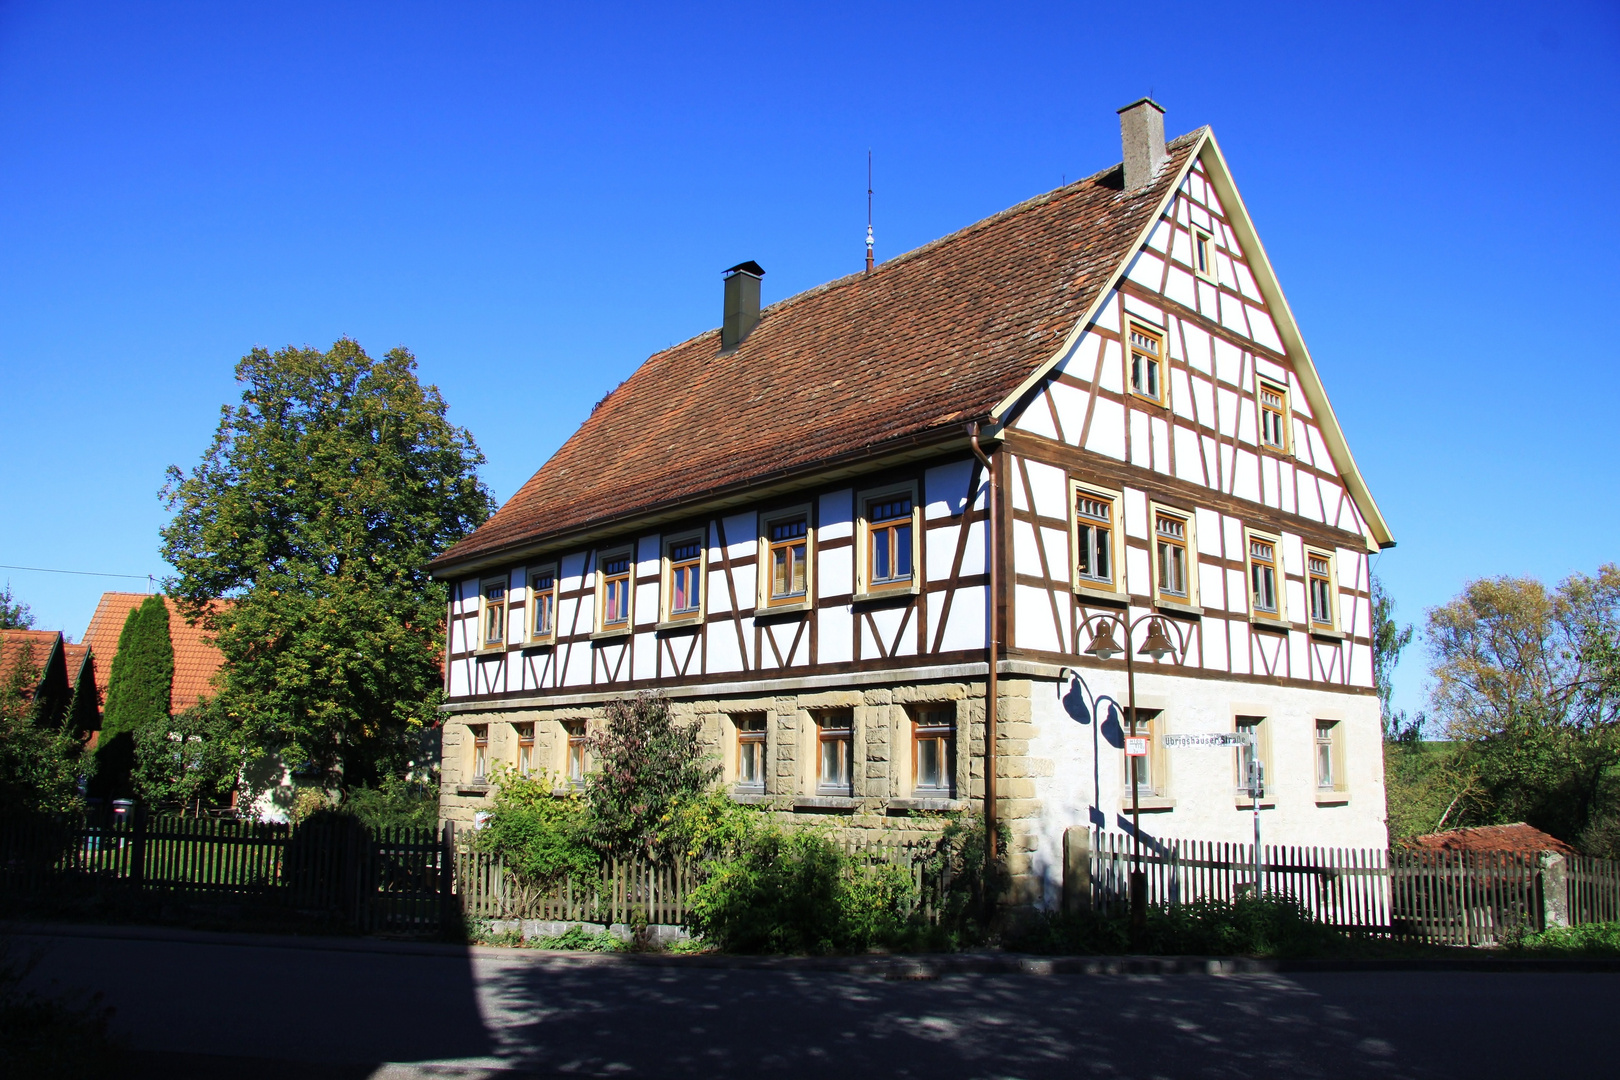 Hohenloher Bauernhaus